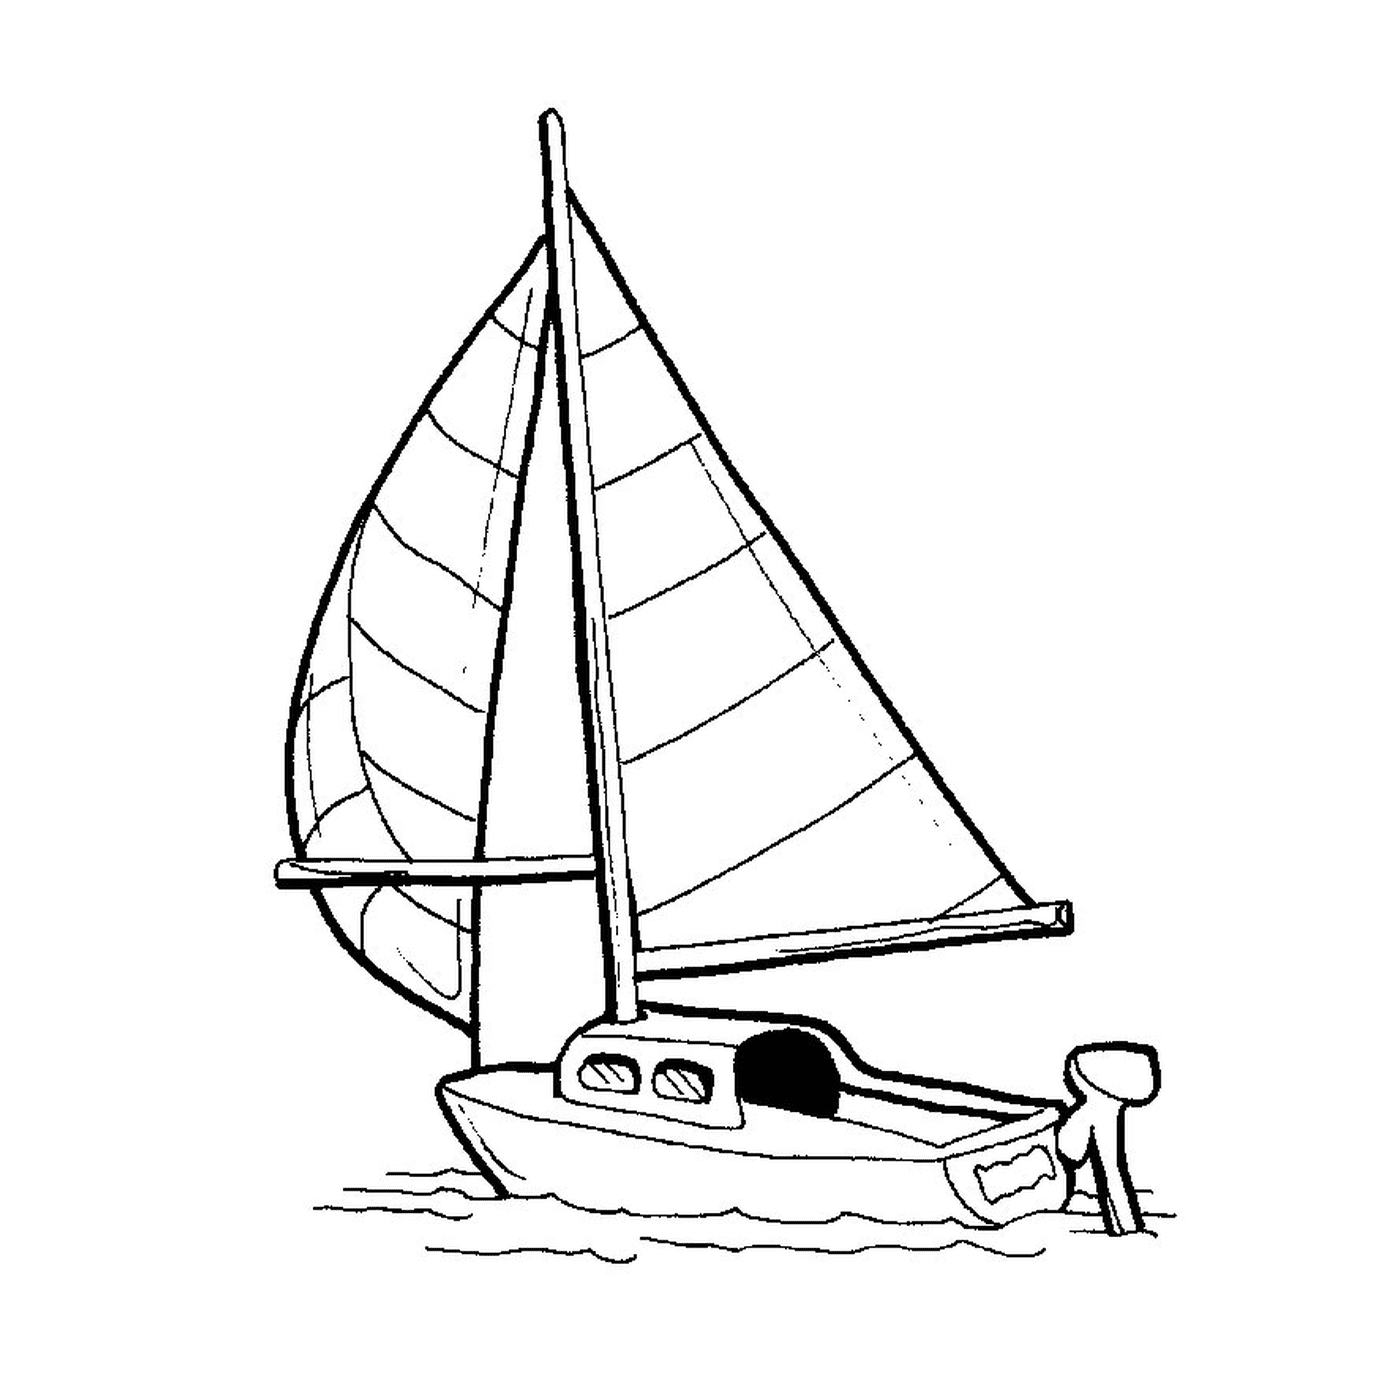  Ein Rennboot wird in einer Zeichnung gezeigt 